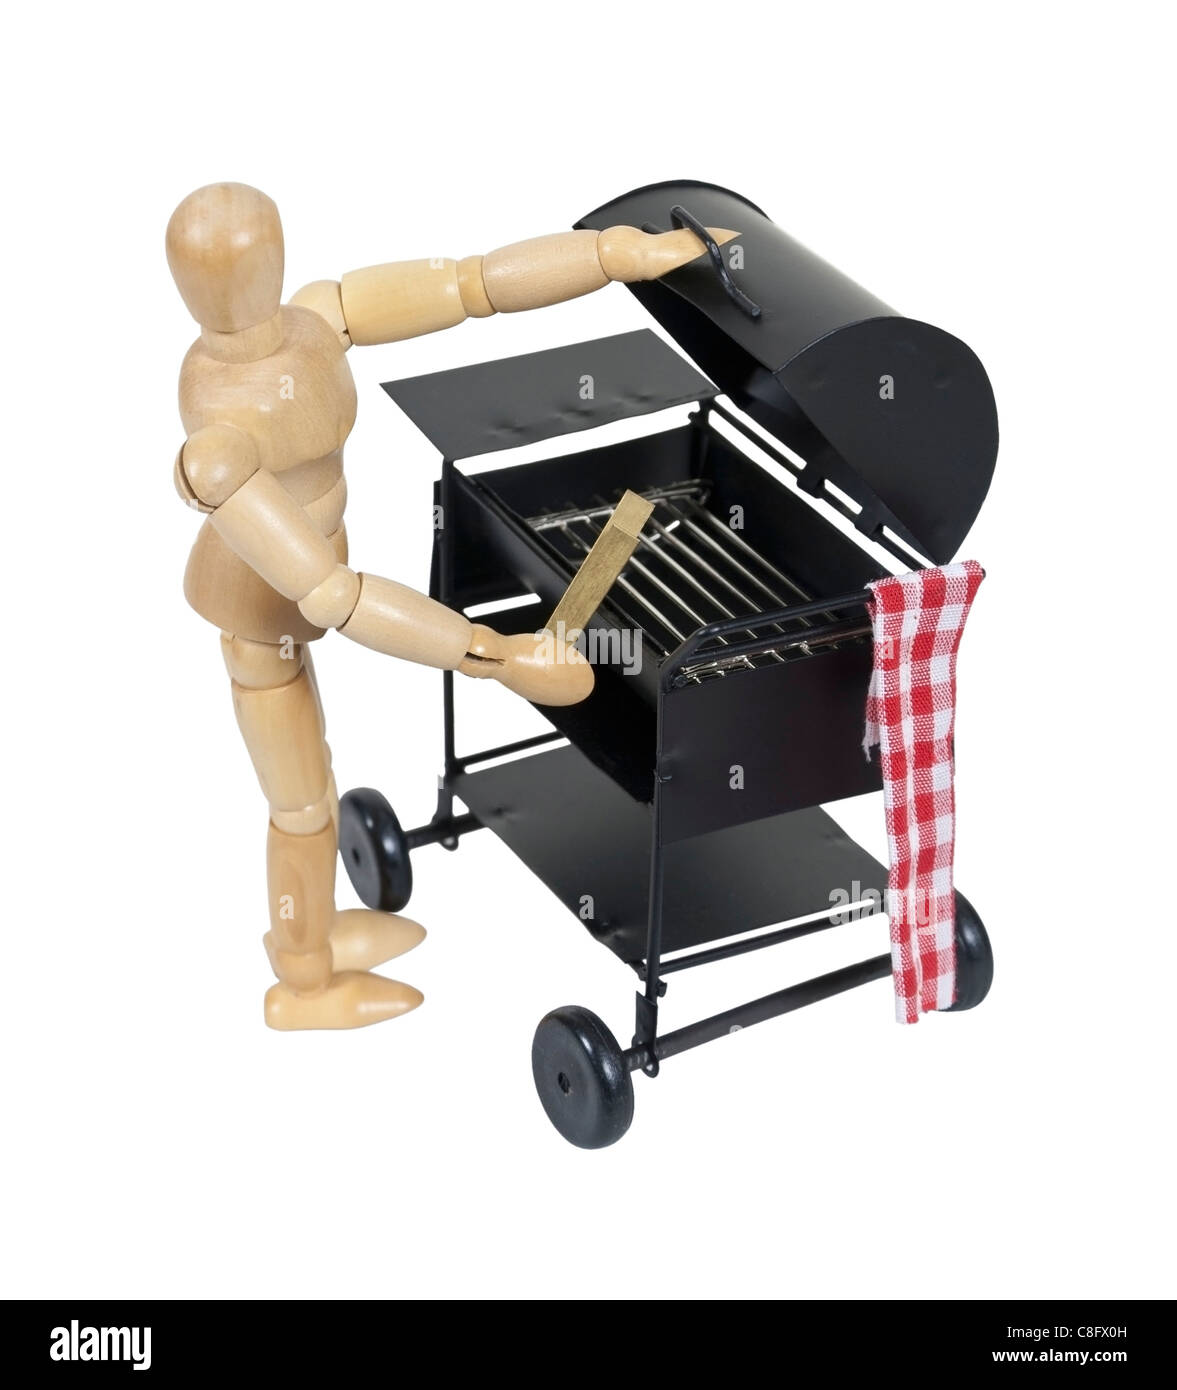 Preparare il grill barbecue per la cottura di cibi alla brace - percorso incluso Foto Stock